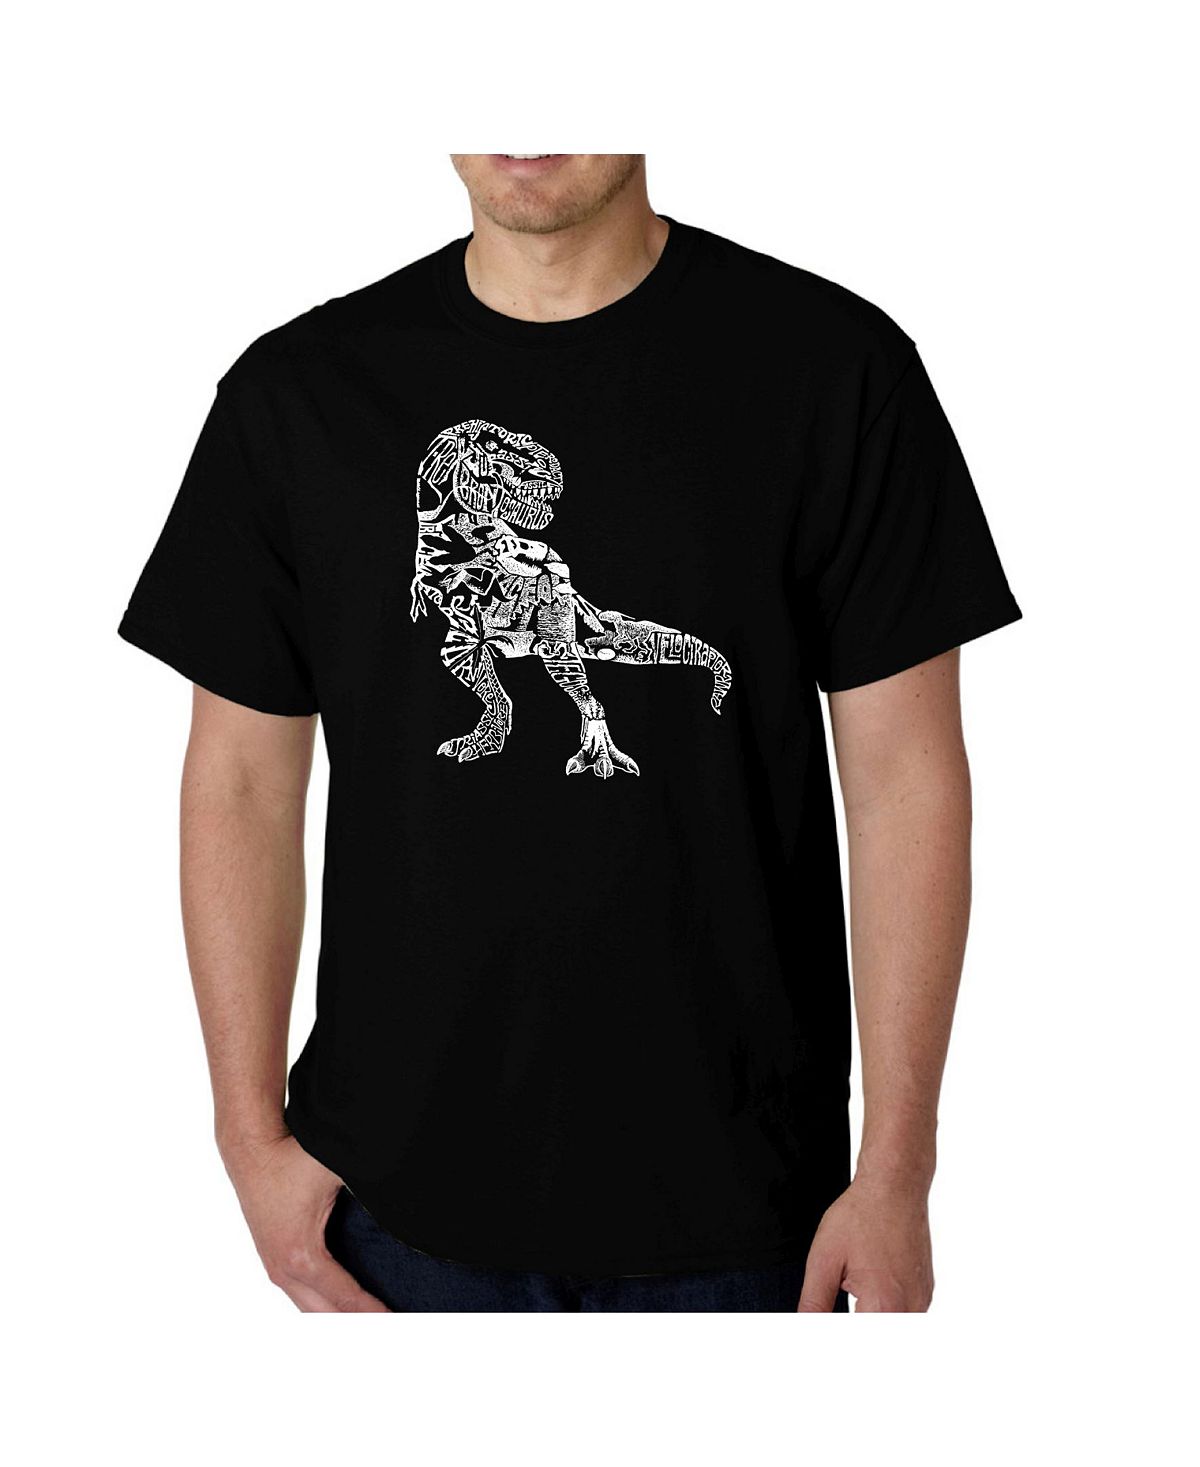 Мужская футболка word art - динозавр LA Pop Art, черный